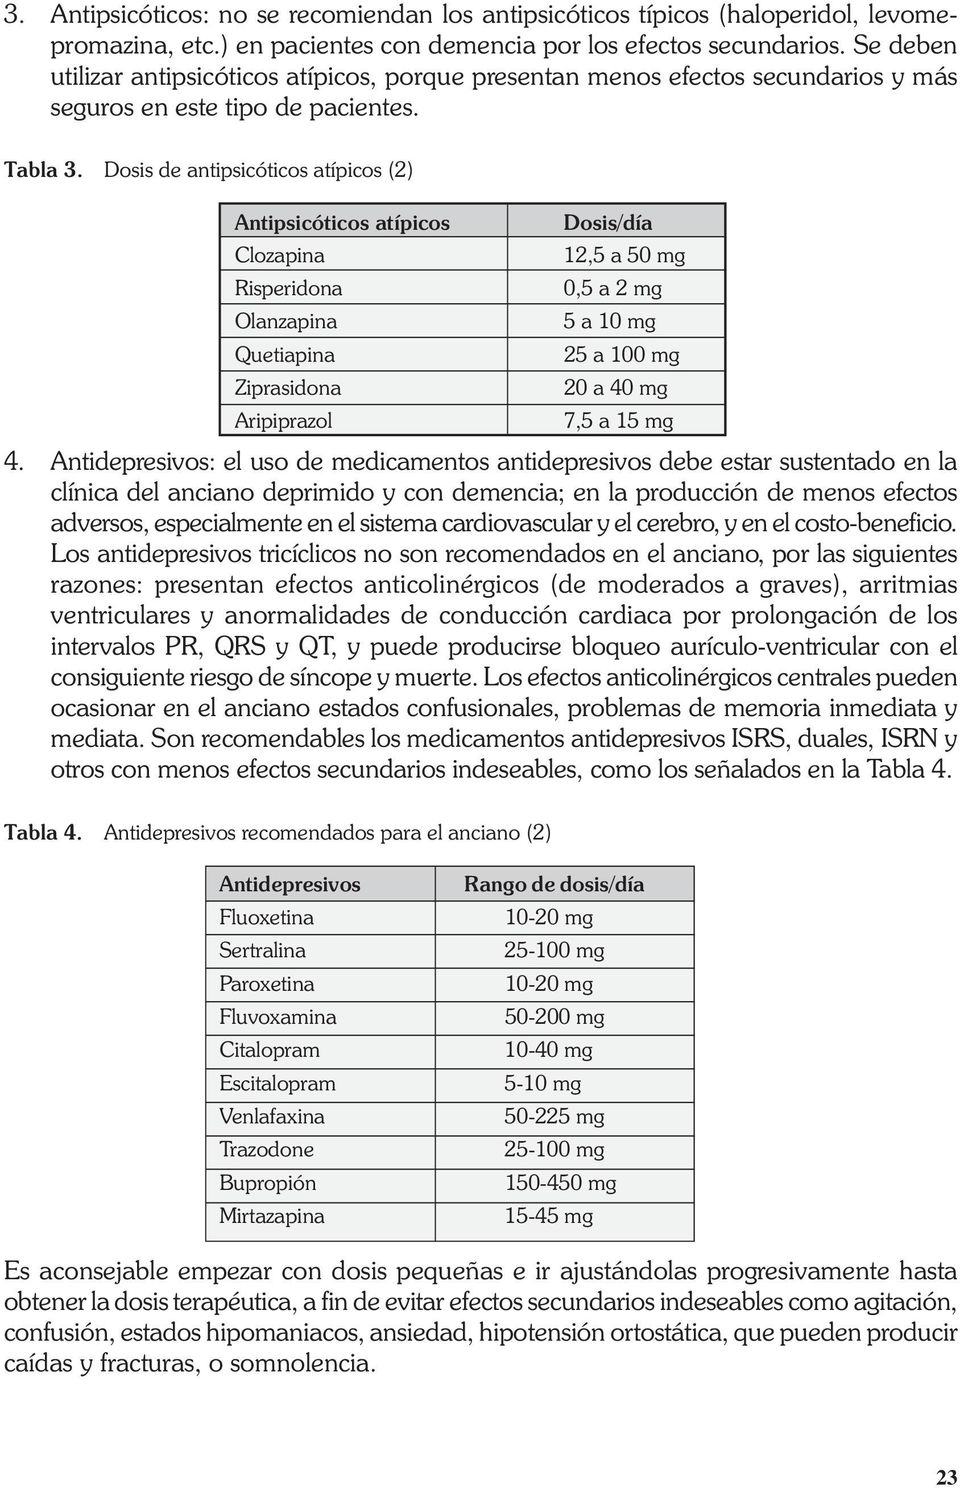 Dosis de antipsicóticos atípicos (2) Antipsicóticos atípicos Clozapina Risperidona Olanzapina Quetiapina Ziprasidona Aripiprazol Dosis/día 12,5 a 50 mg 0,5 a 2 mg 5 a 10 mg 25 a 100 mg 20 a 40 mg 7,5